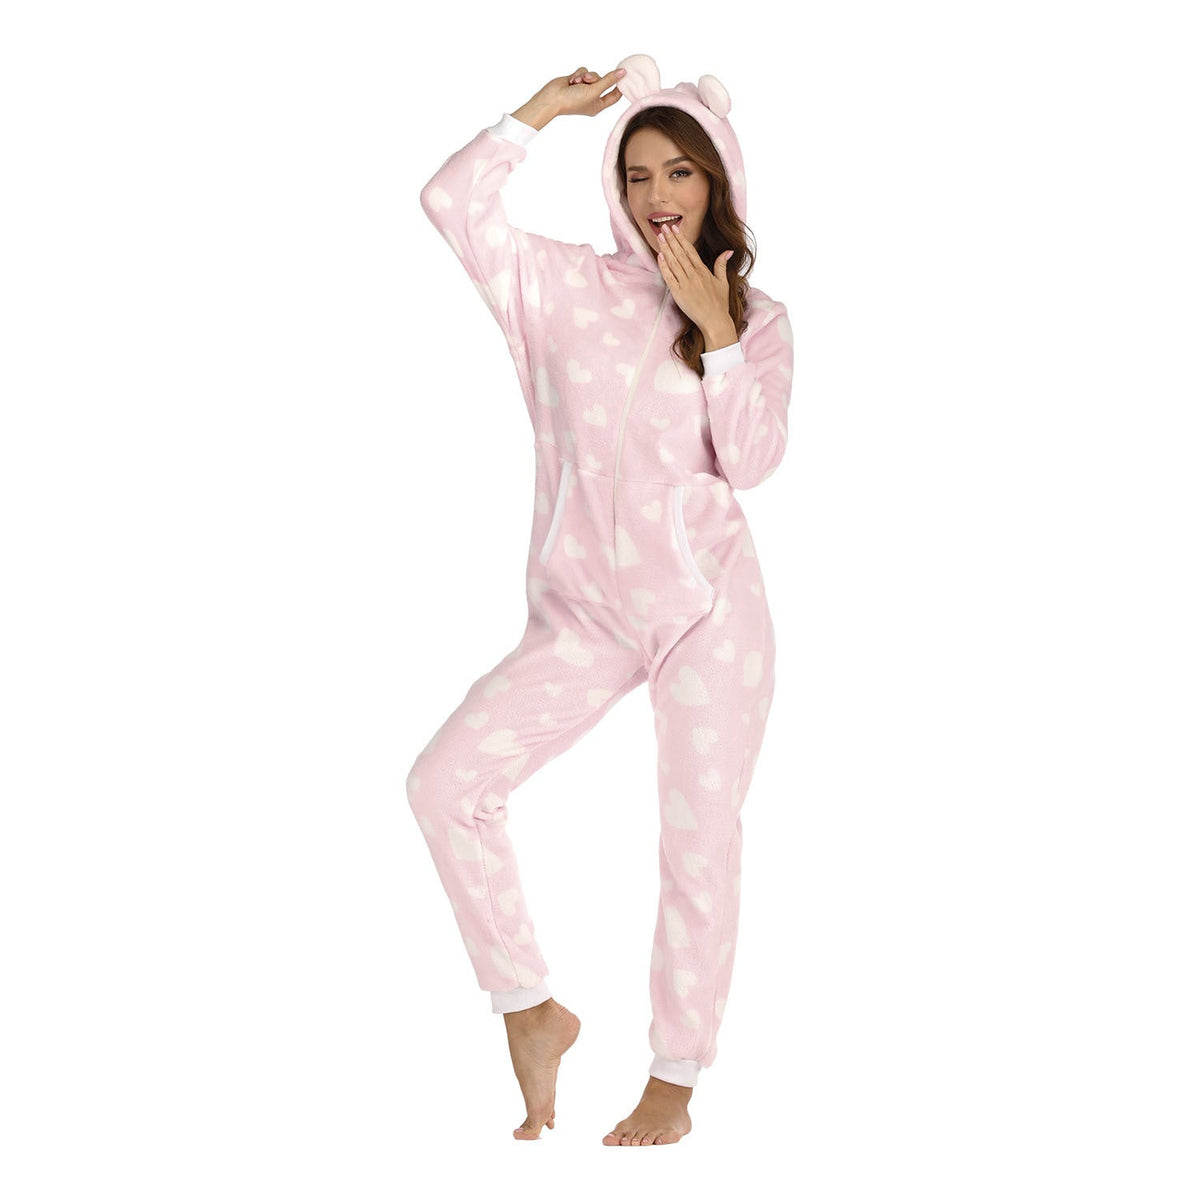 Zip Up Women Onesie with Hood Onesie One-Piece Pajamas Coral Fleece